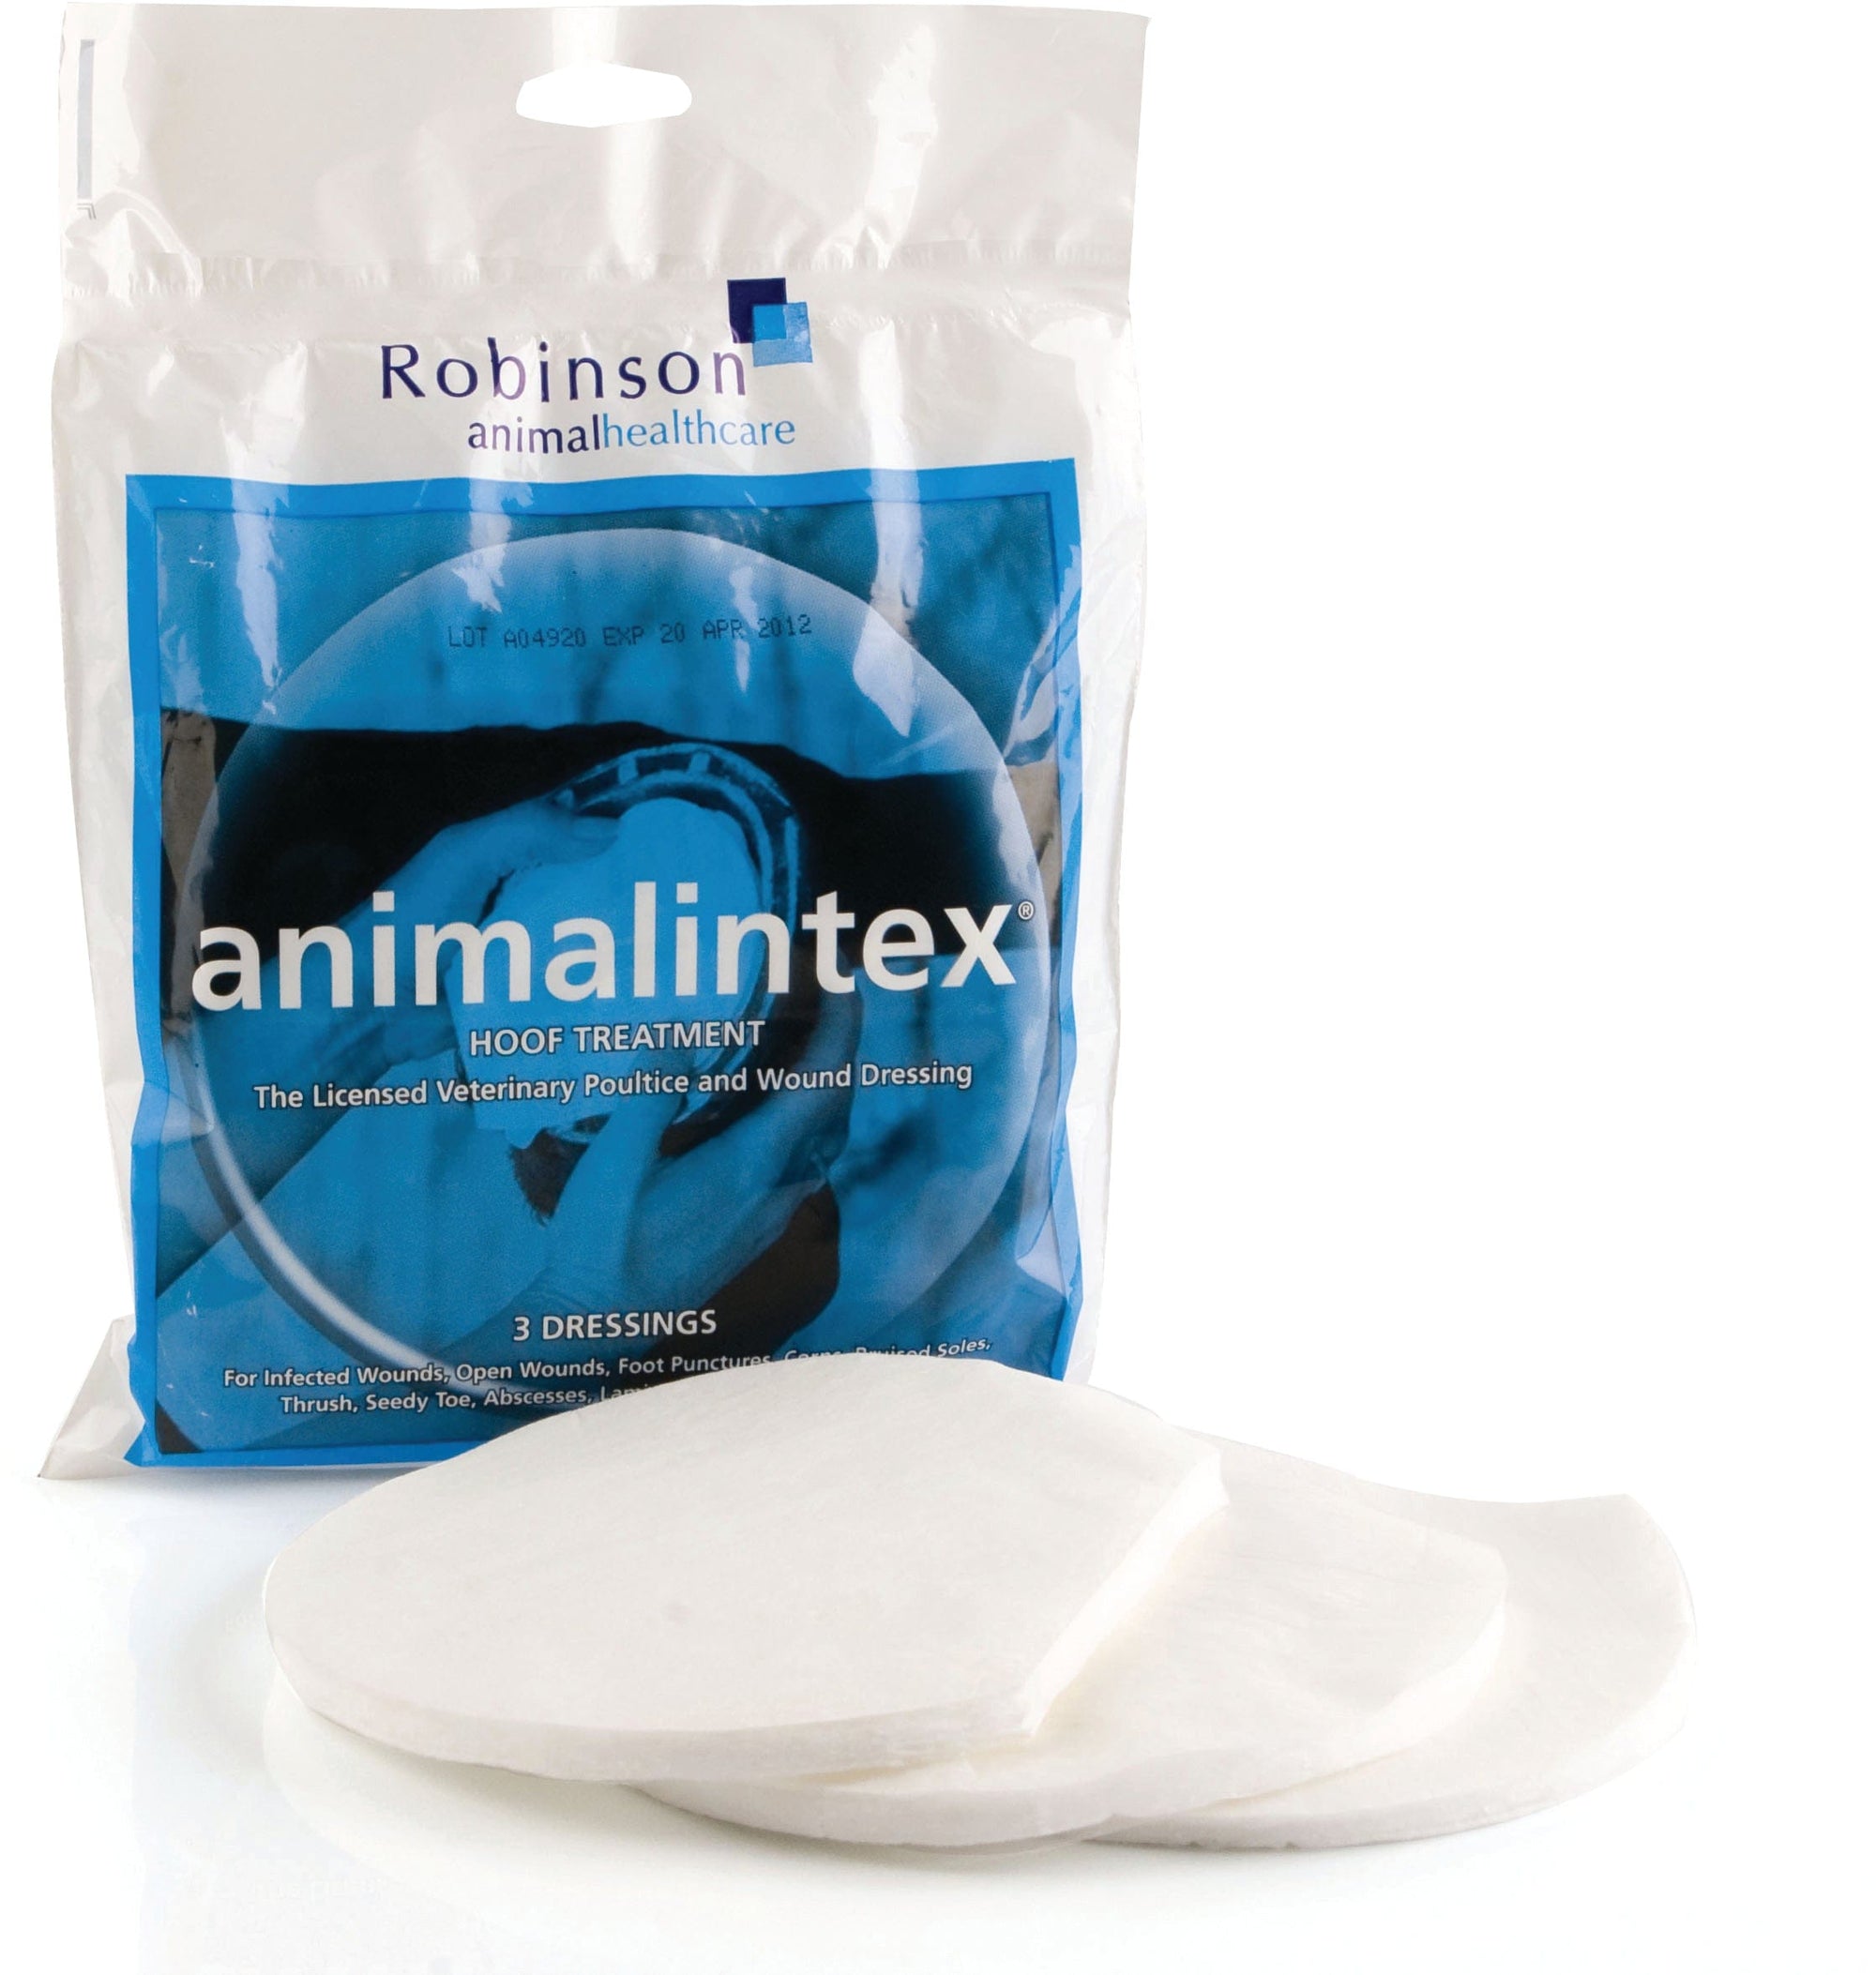 Animalintex hoof treatment